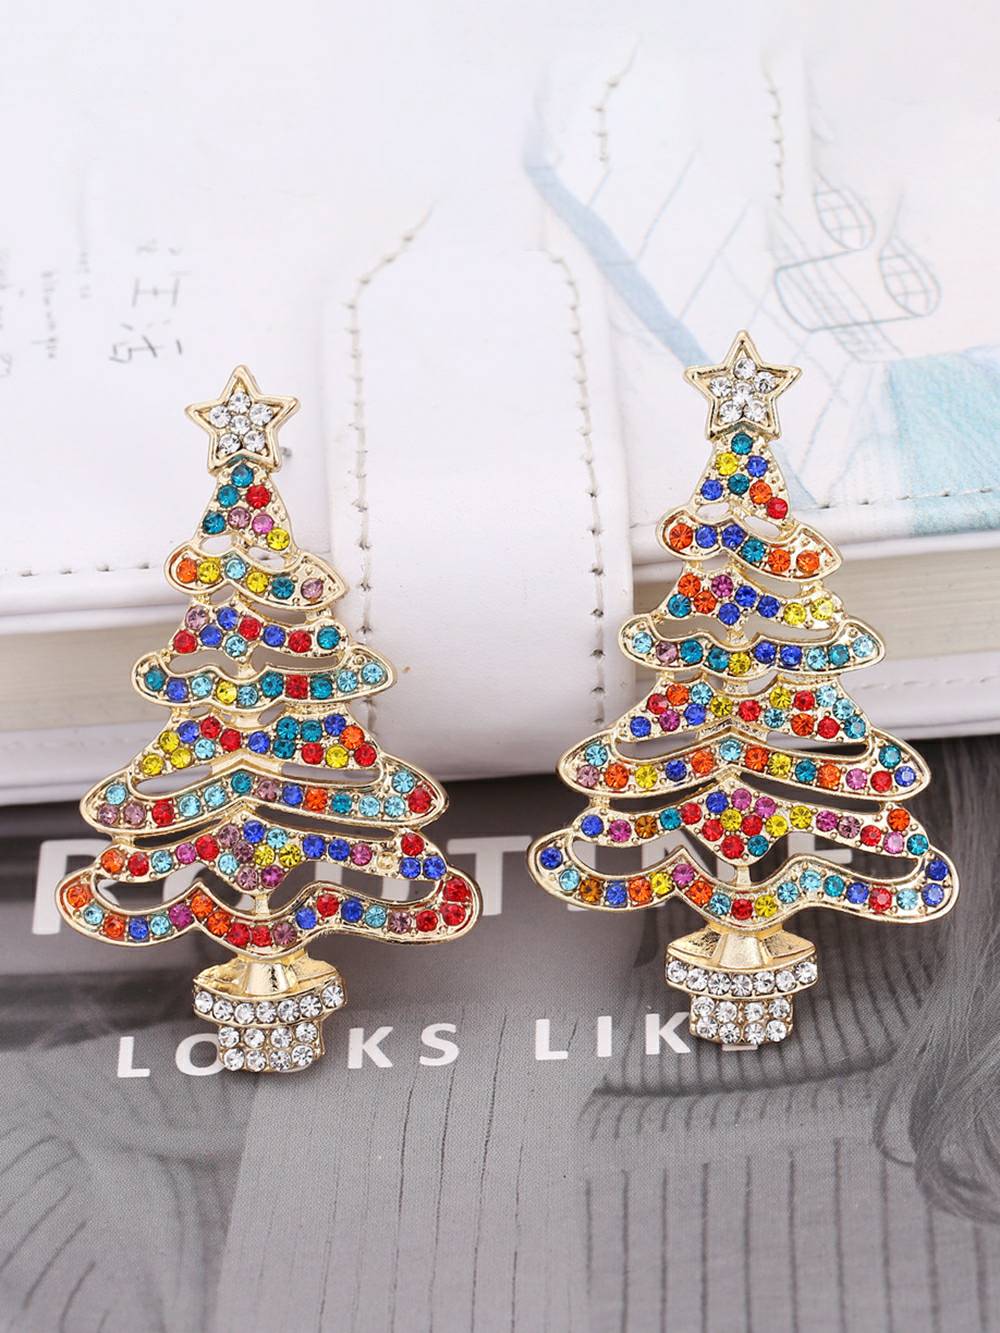 Brincos de árvore de Natal de cristal com inspiração floral